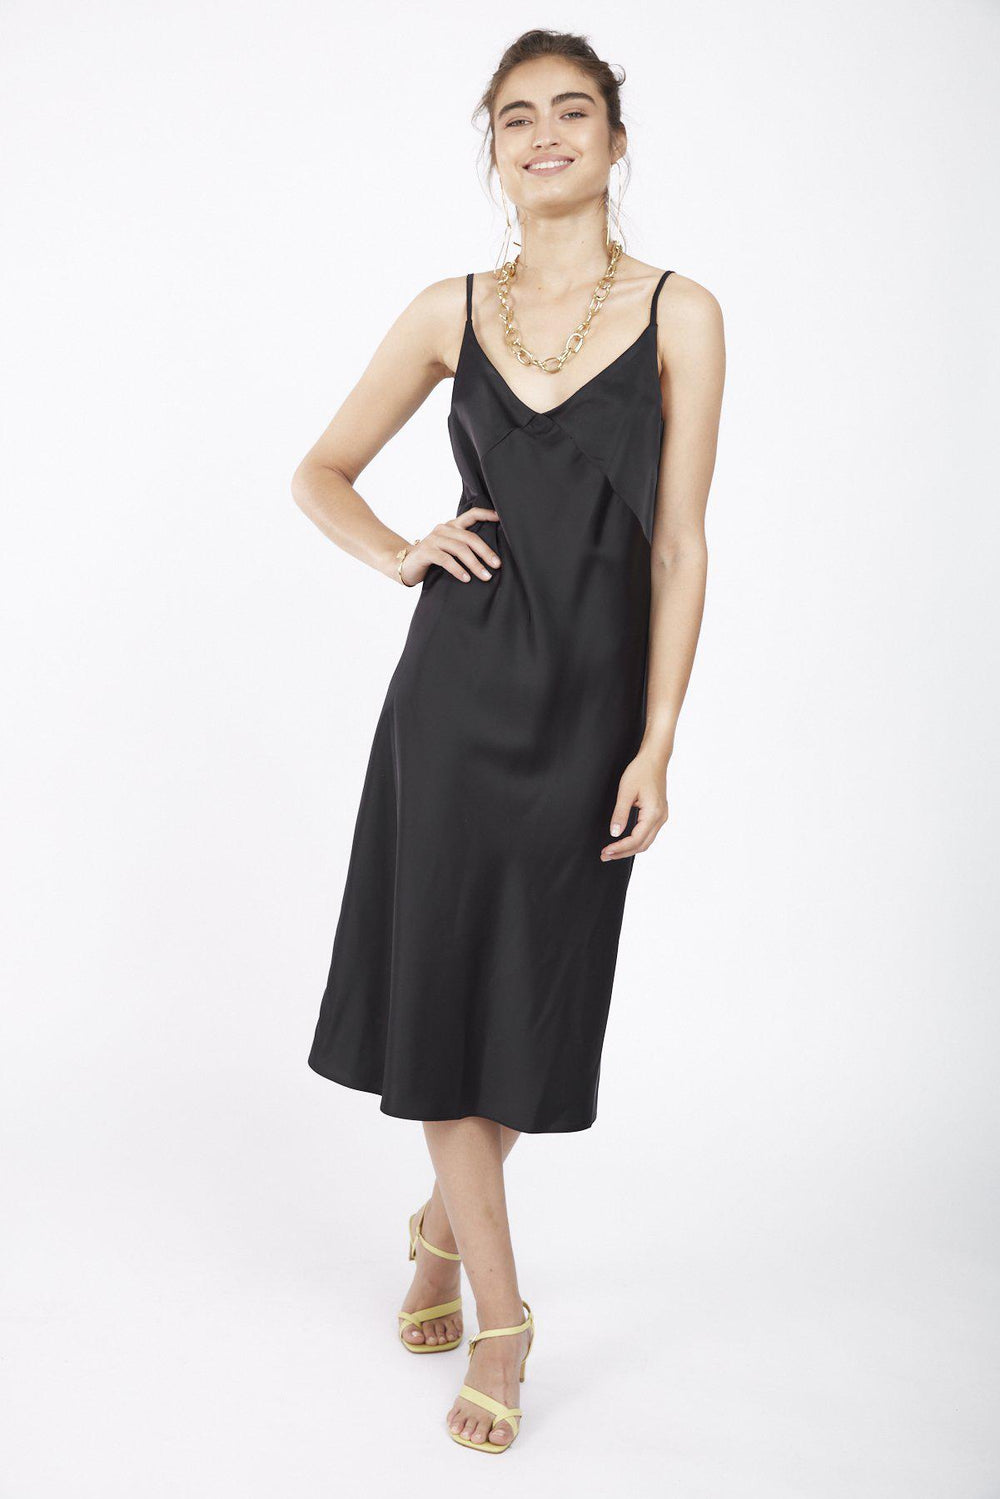 שמלת סרינה בצבע שחור - Razili Studio